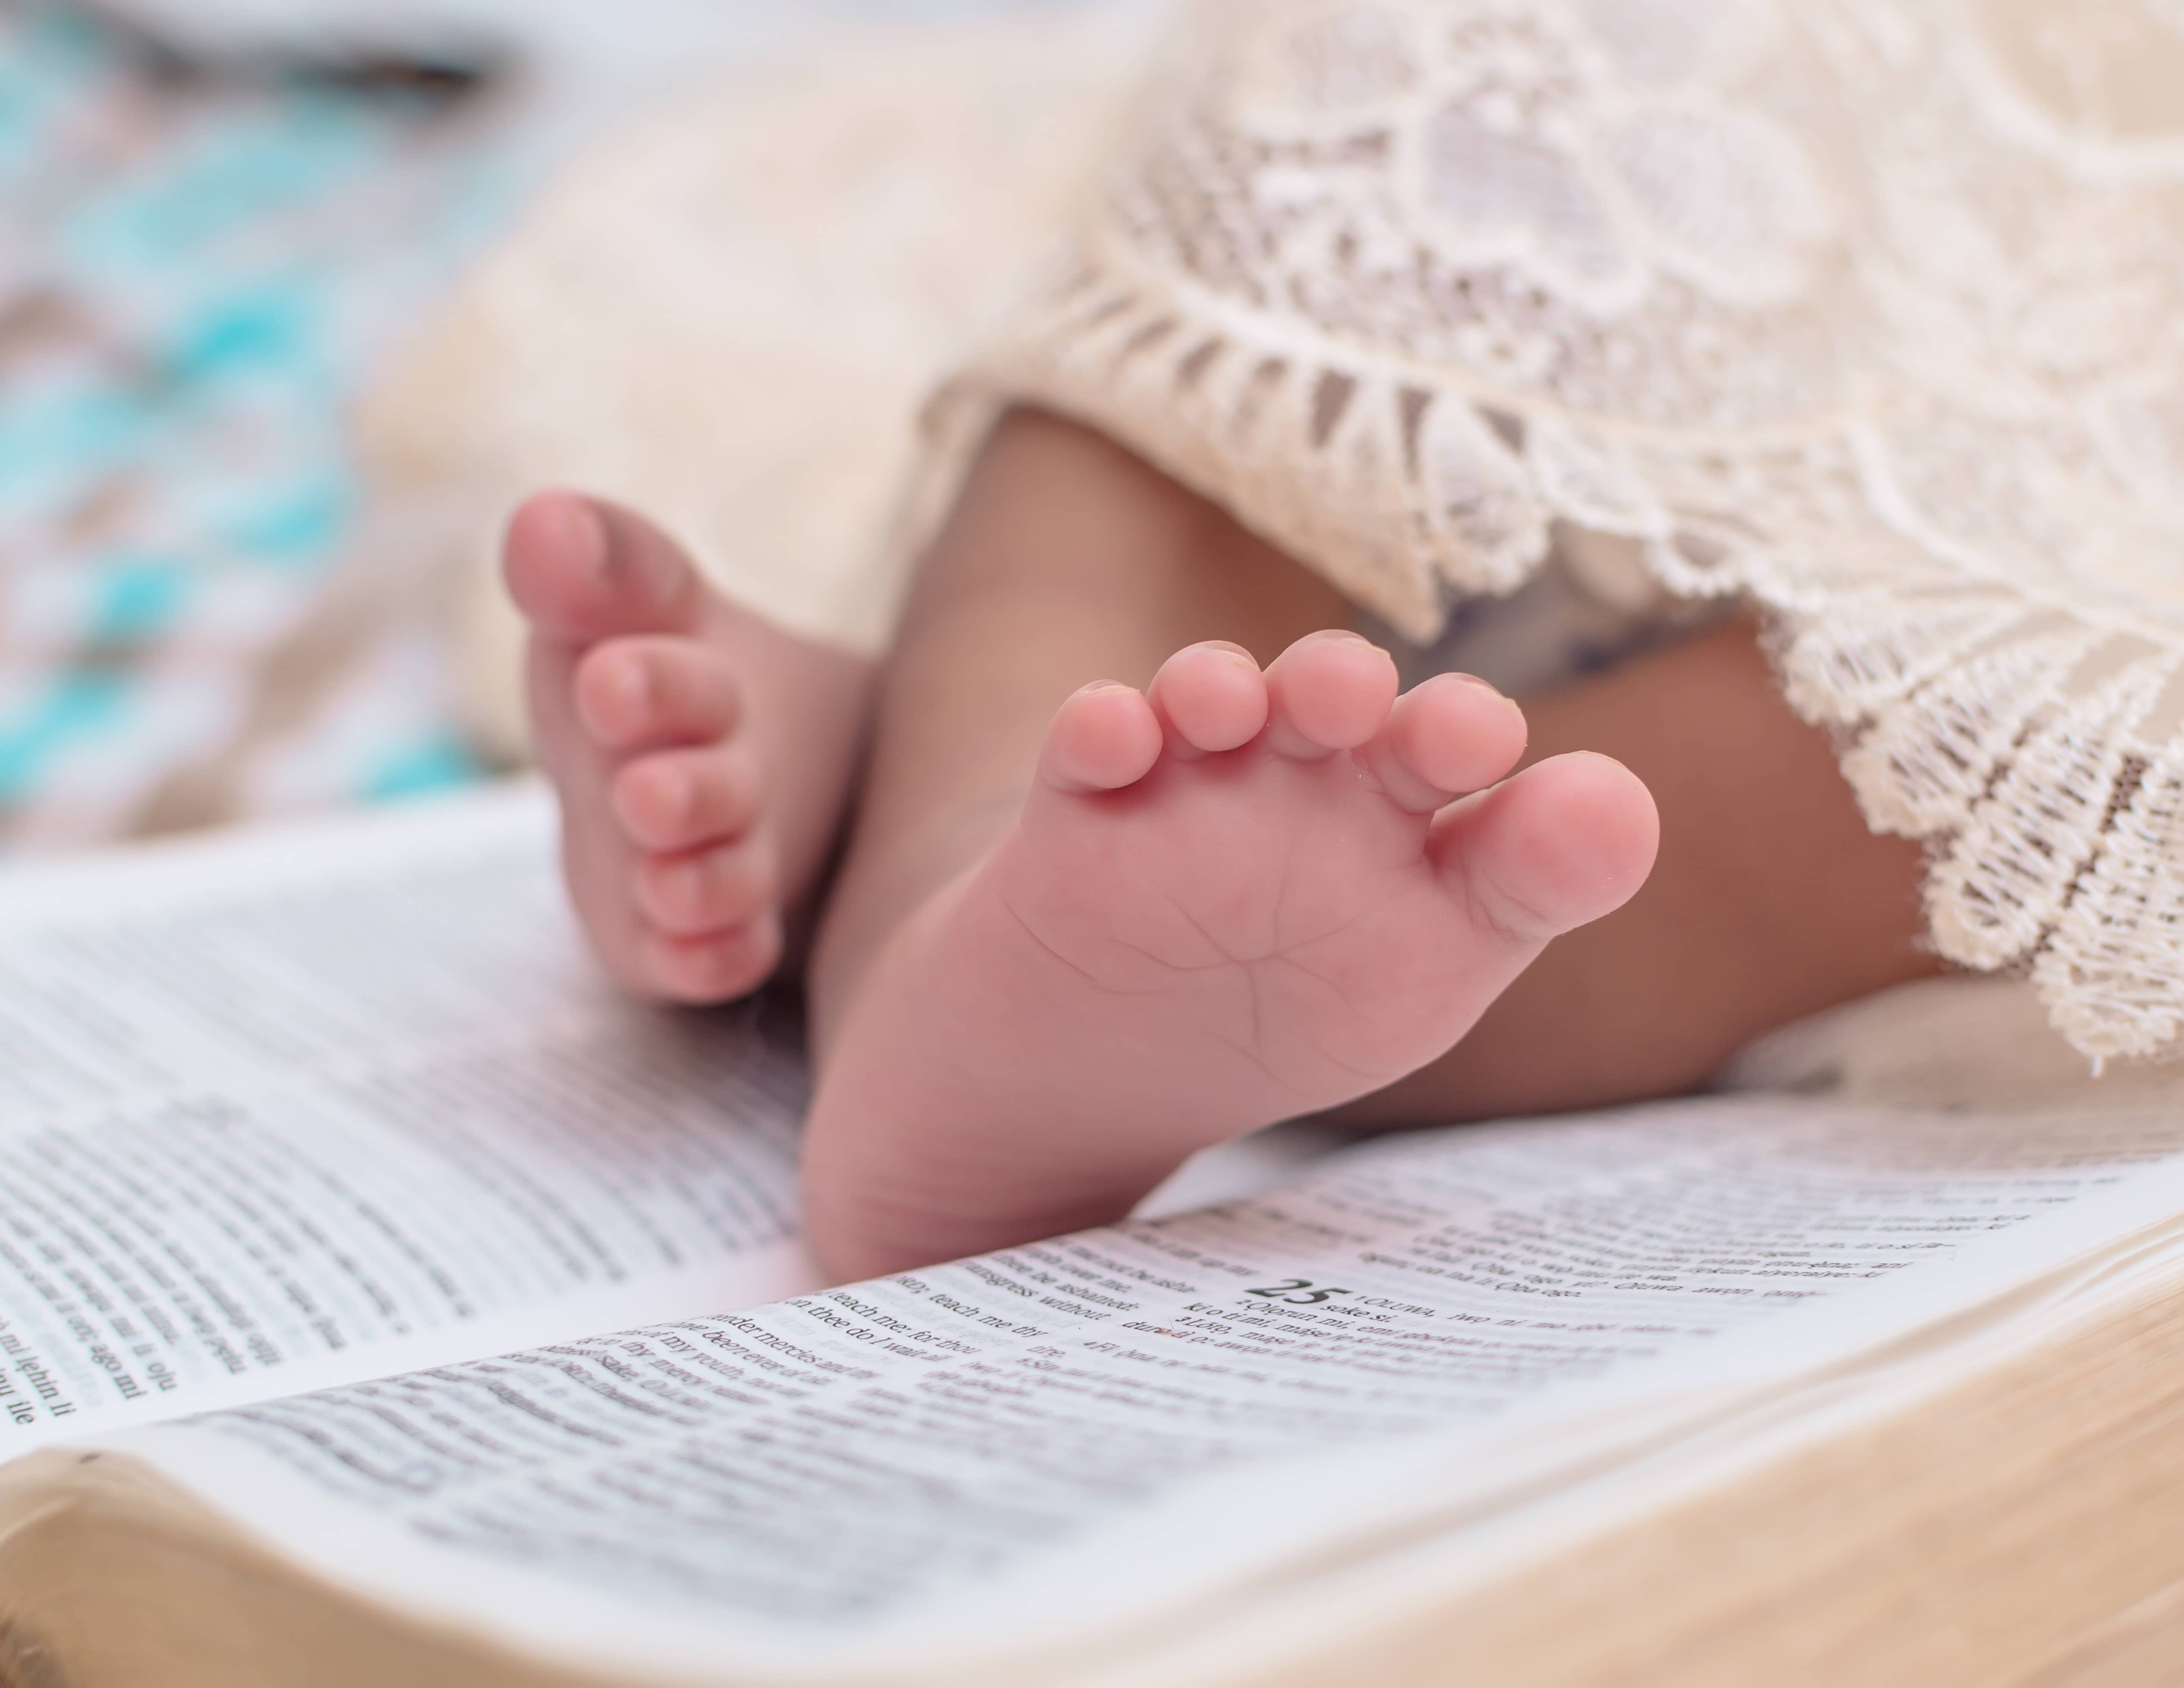 Nomes bíblicos são sempre ótimas escolhas para bebês, mas se você proc